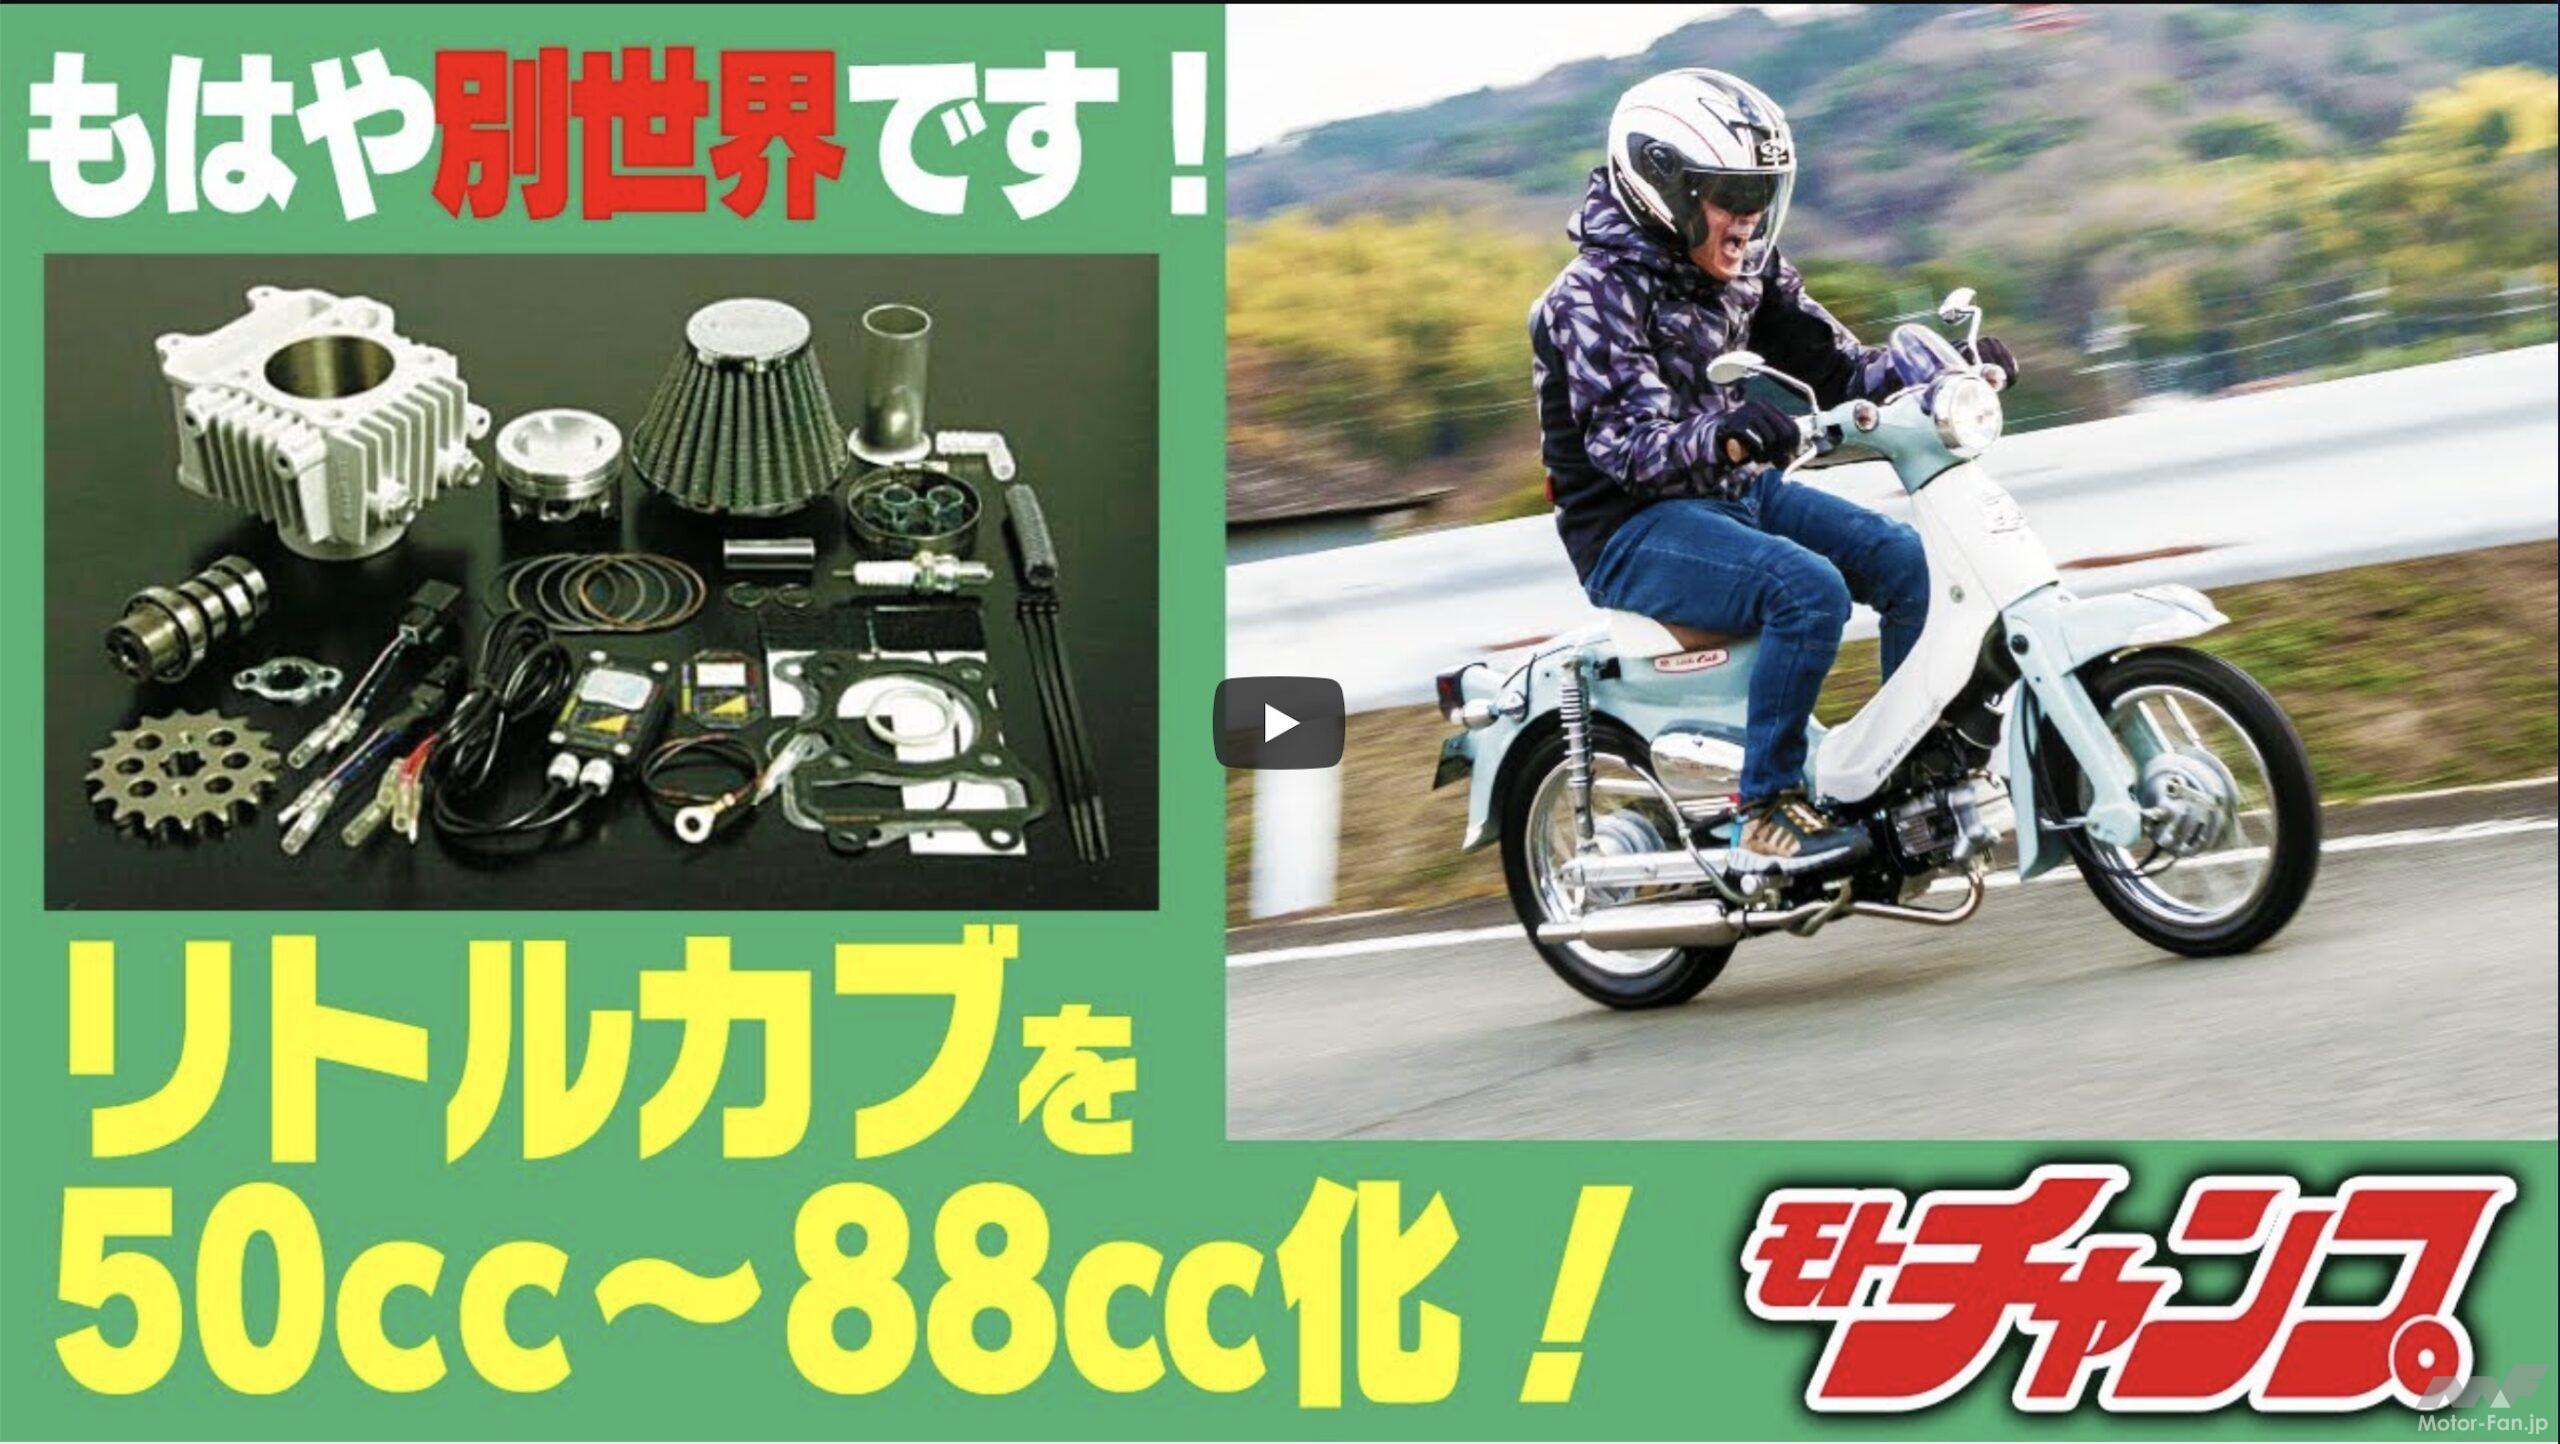 カブ ボアアップ 88cc - オートバイ車体